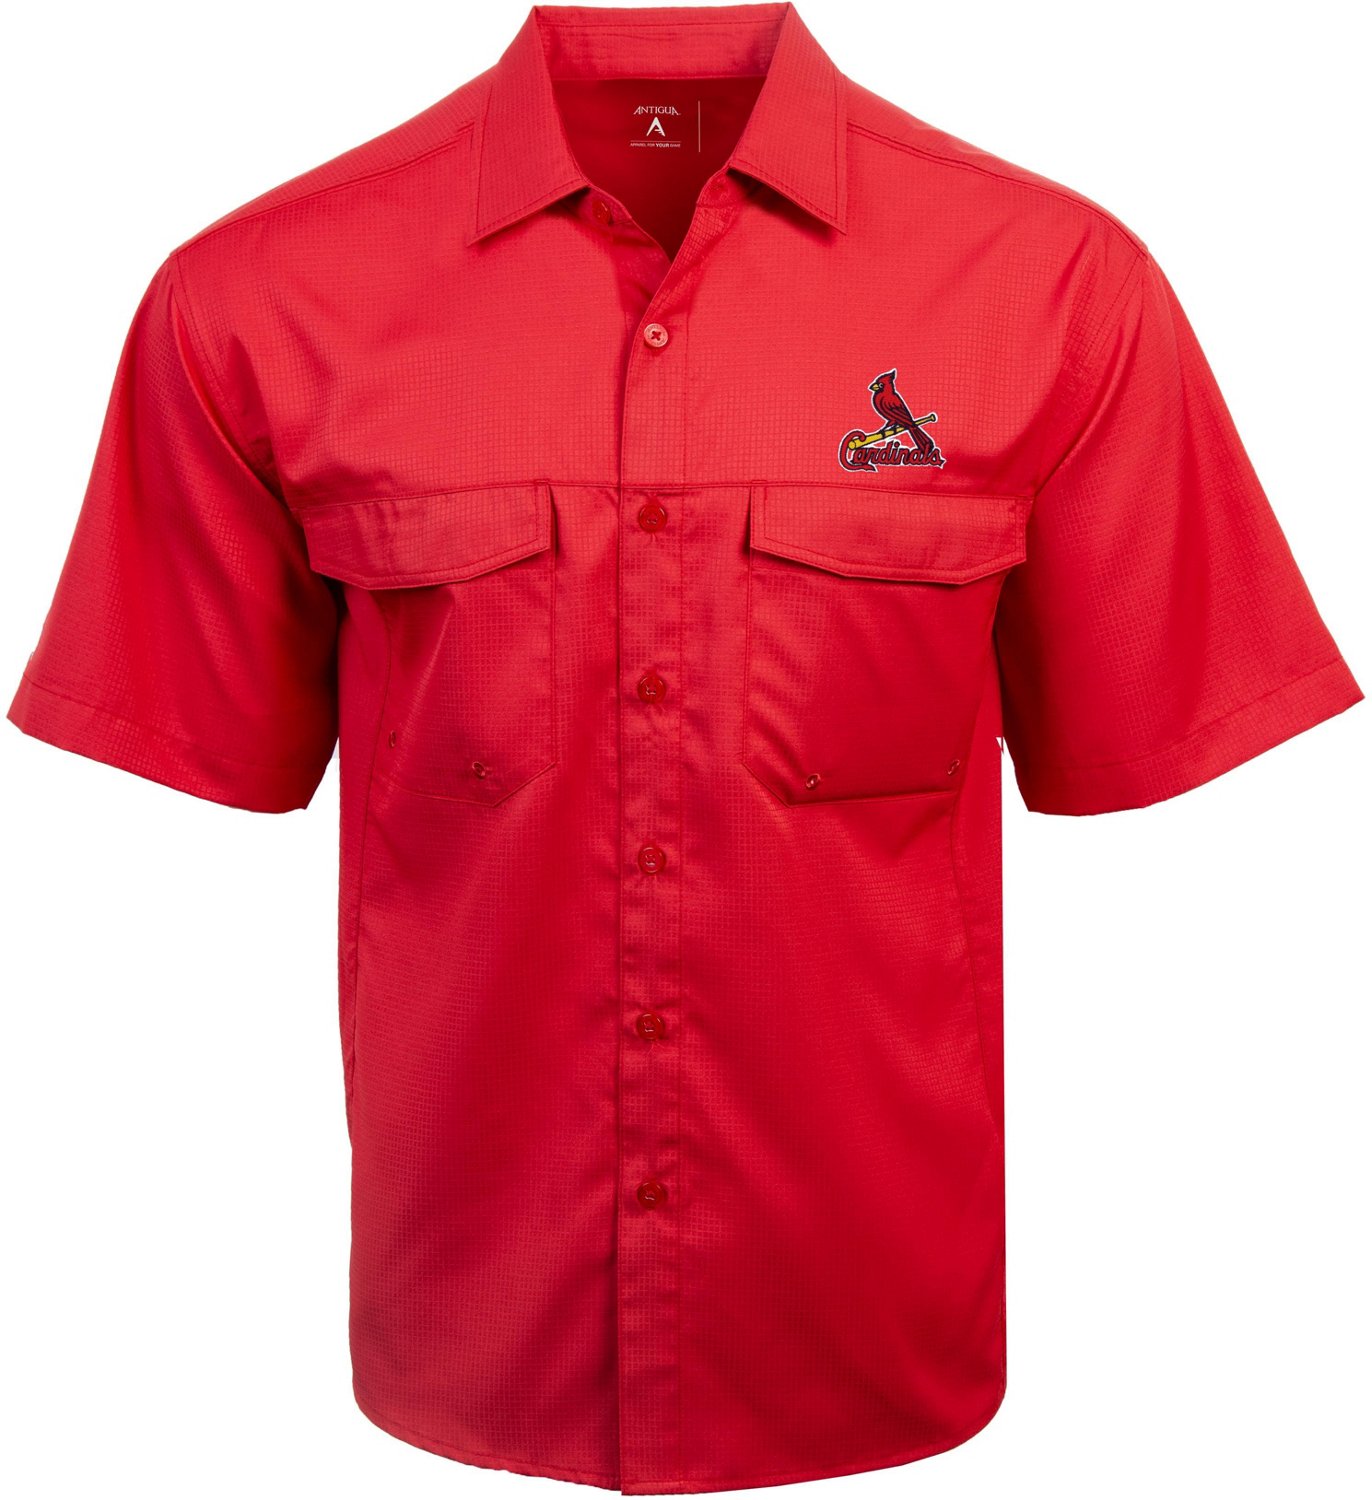 Women's Antigua St. Louis Cardinals Red Structure Woven Shirt